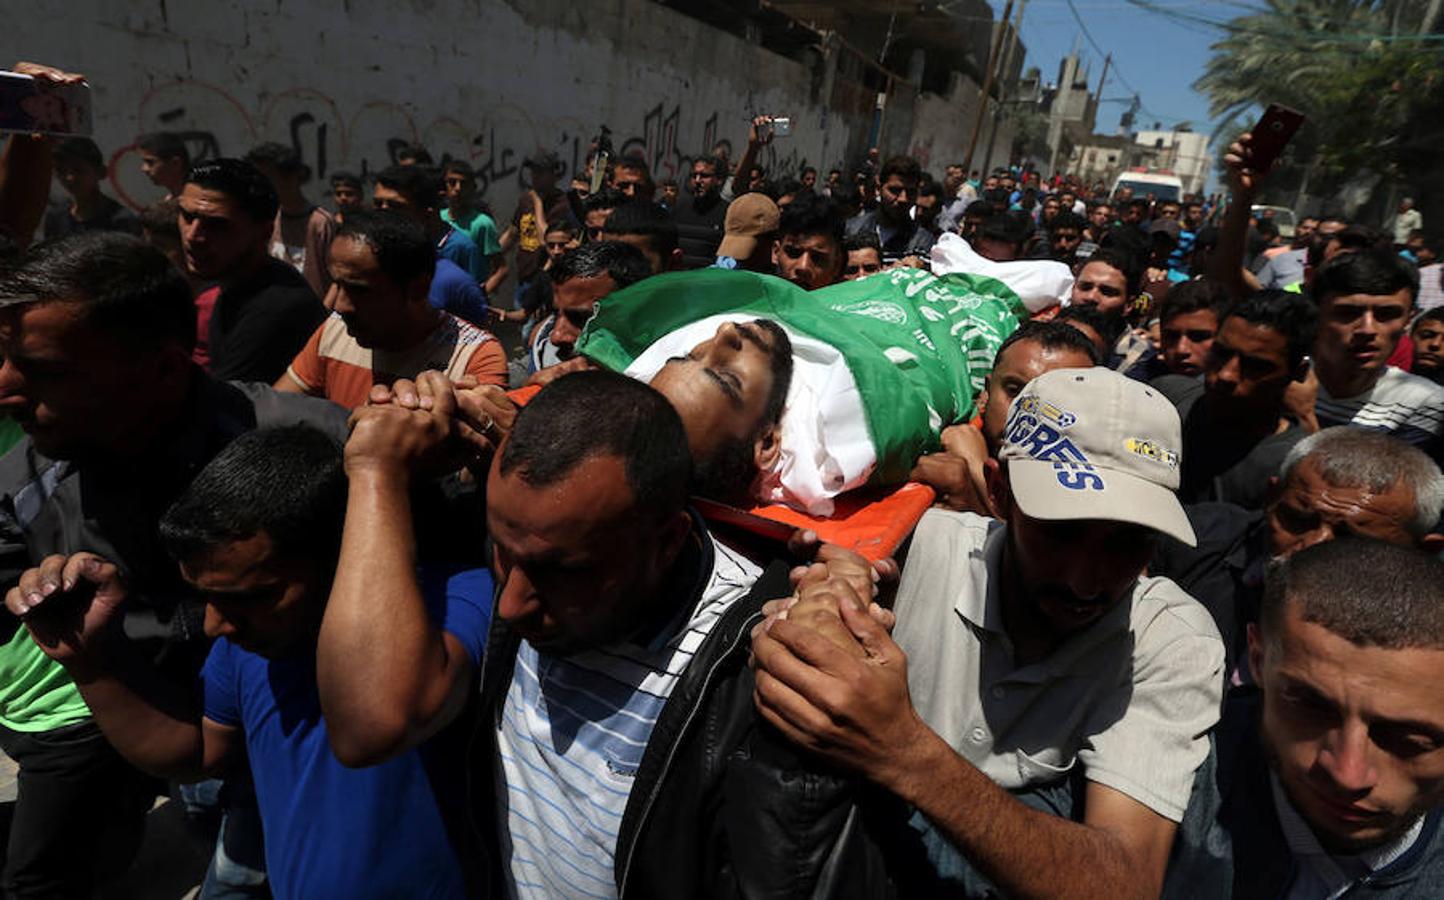 La reacción armada del Gobierno israelí a las protestas de palestinos en Gaza, por el traslado de la embajada de EE UU a Jerusalén, desata un auténtico baño de sangre